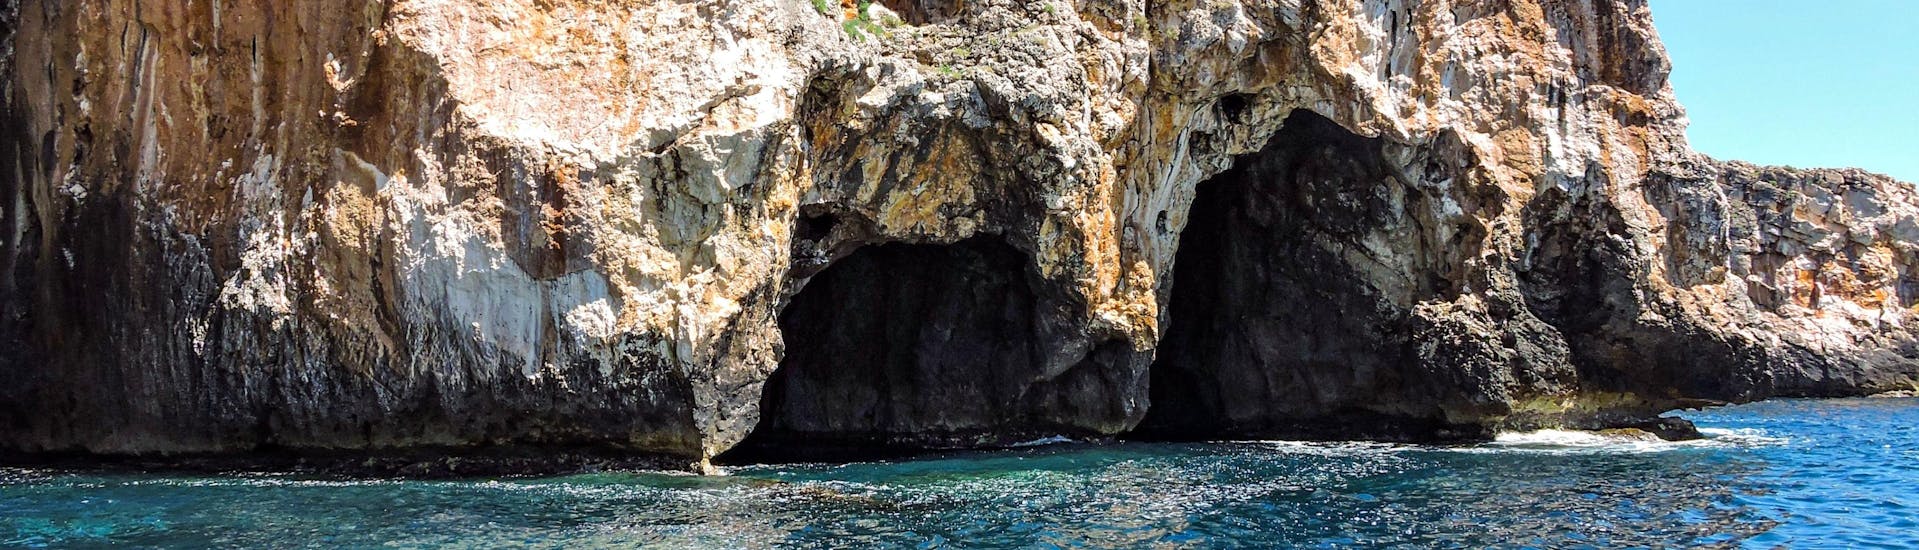 Vue sur une des grottes que l'on peut atteindre lors d'une balade en bateau depuis Santa Maria di Leuca.